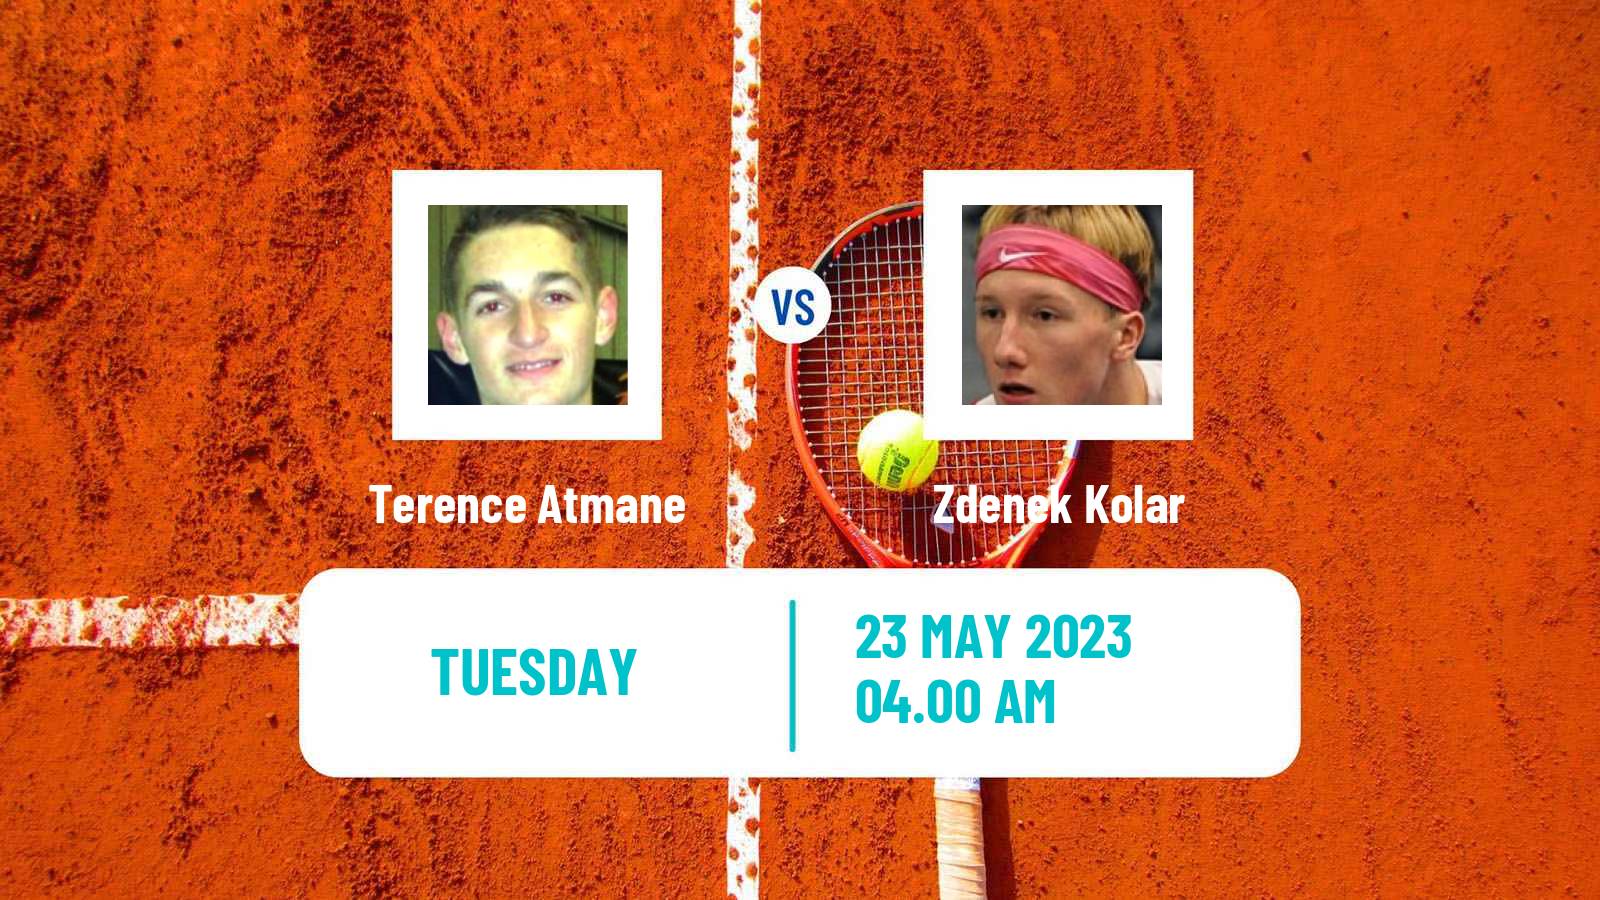 Tennis ATP Roland Garros Terence Atmane - Zdenek Kolar